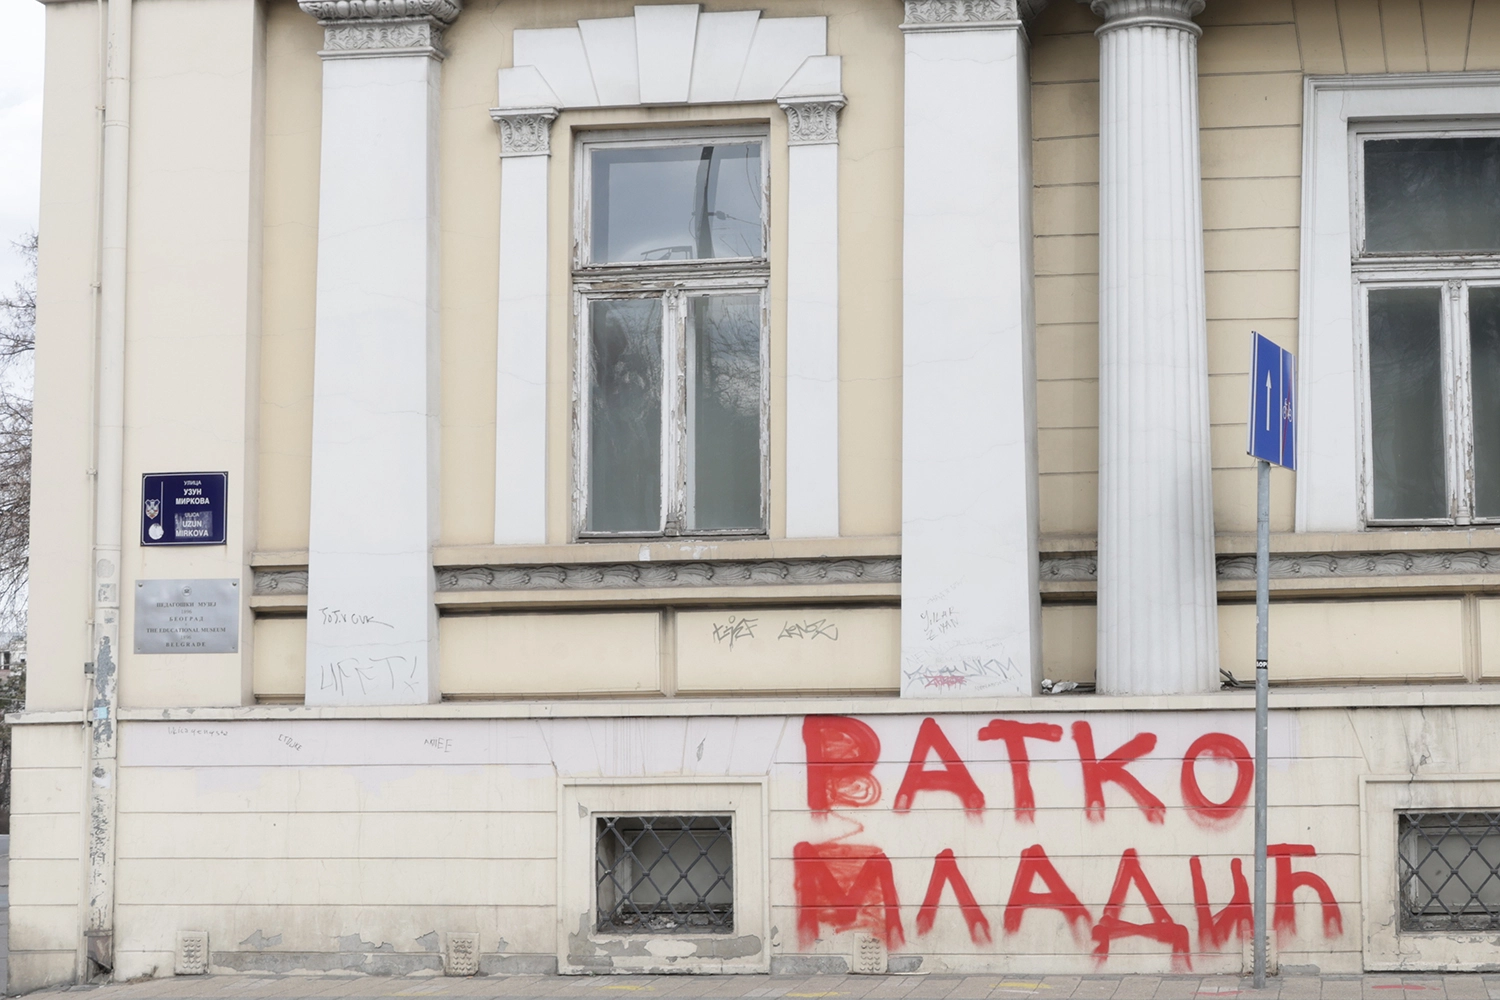 Graffiti in Belgrade, Serbia, in February 2022 referring to Ratko Mladić, a.k.a. “the Butcher of Bosnia.”